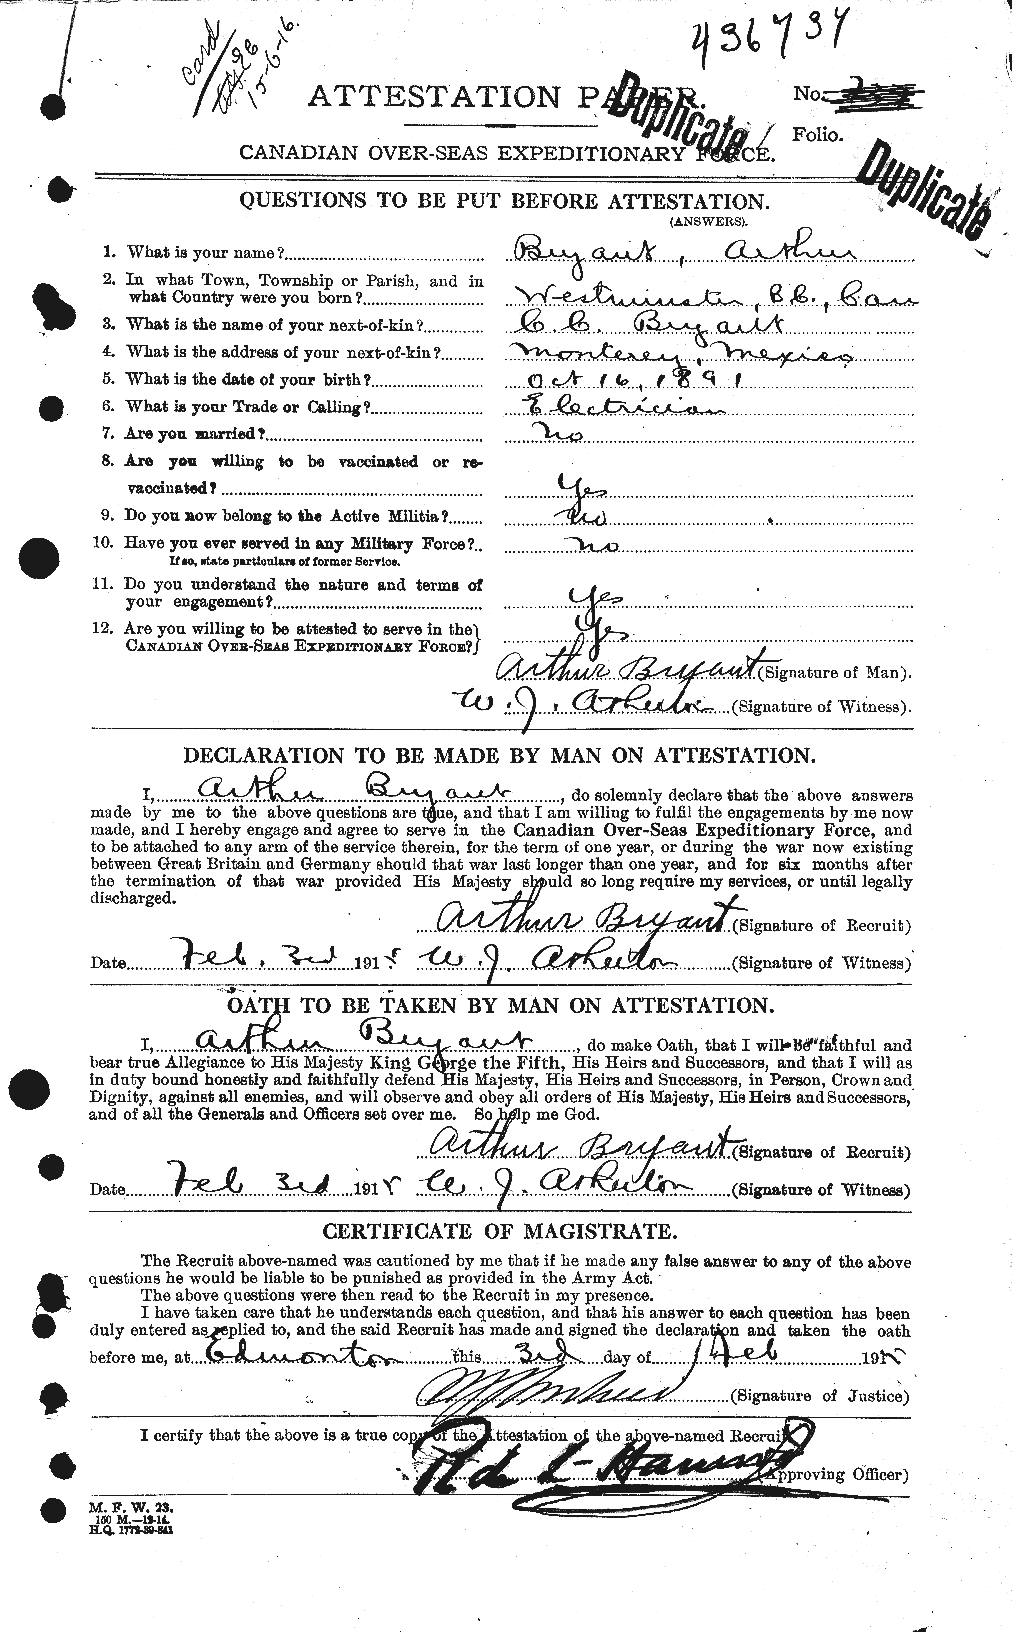 Dossiers du Personnel de la Première Guerre mondiale - CEC 270792a